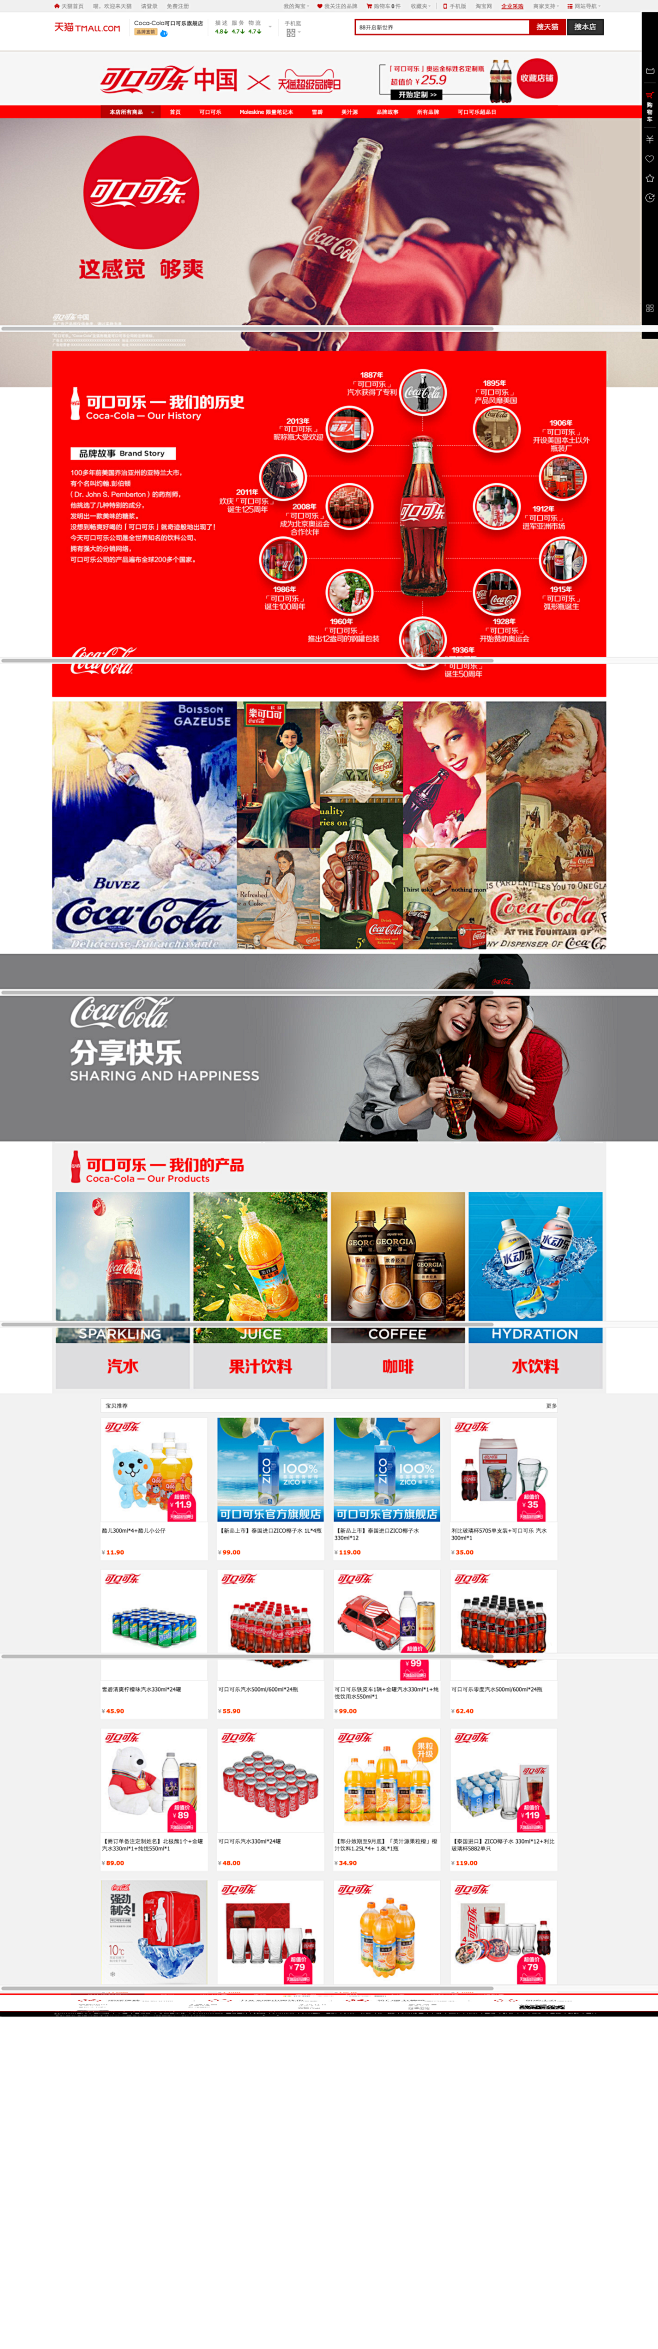 品牌故事-Coca-Cola可口可乐旗舰...